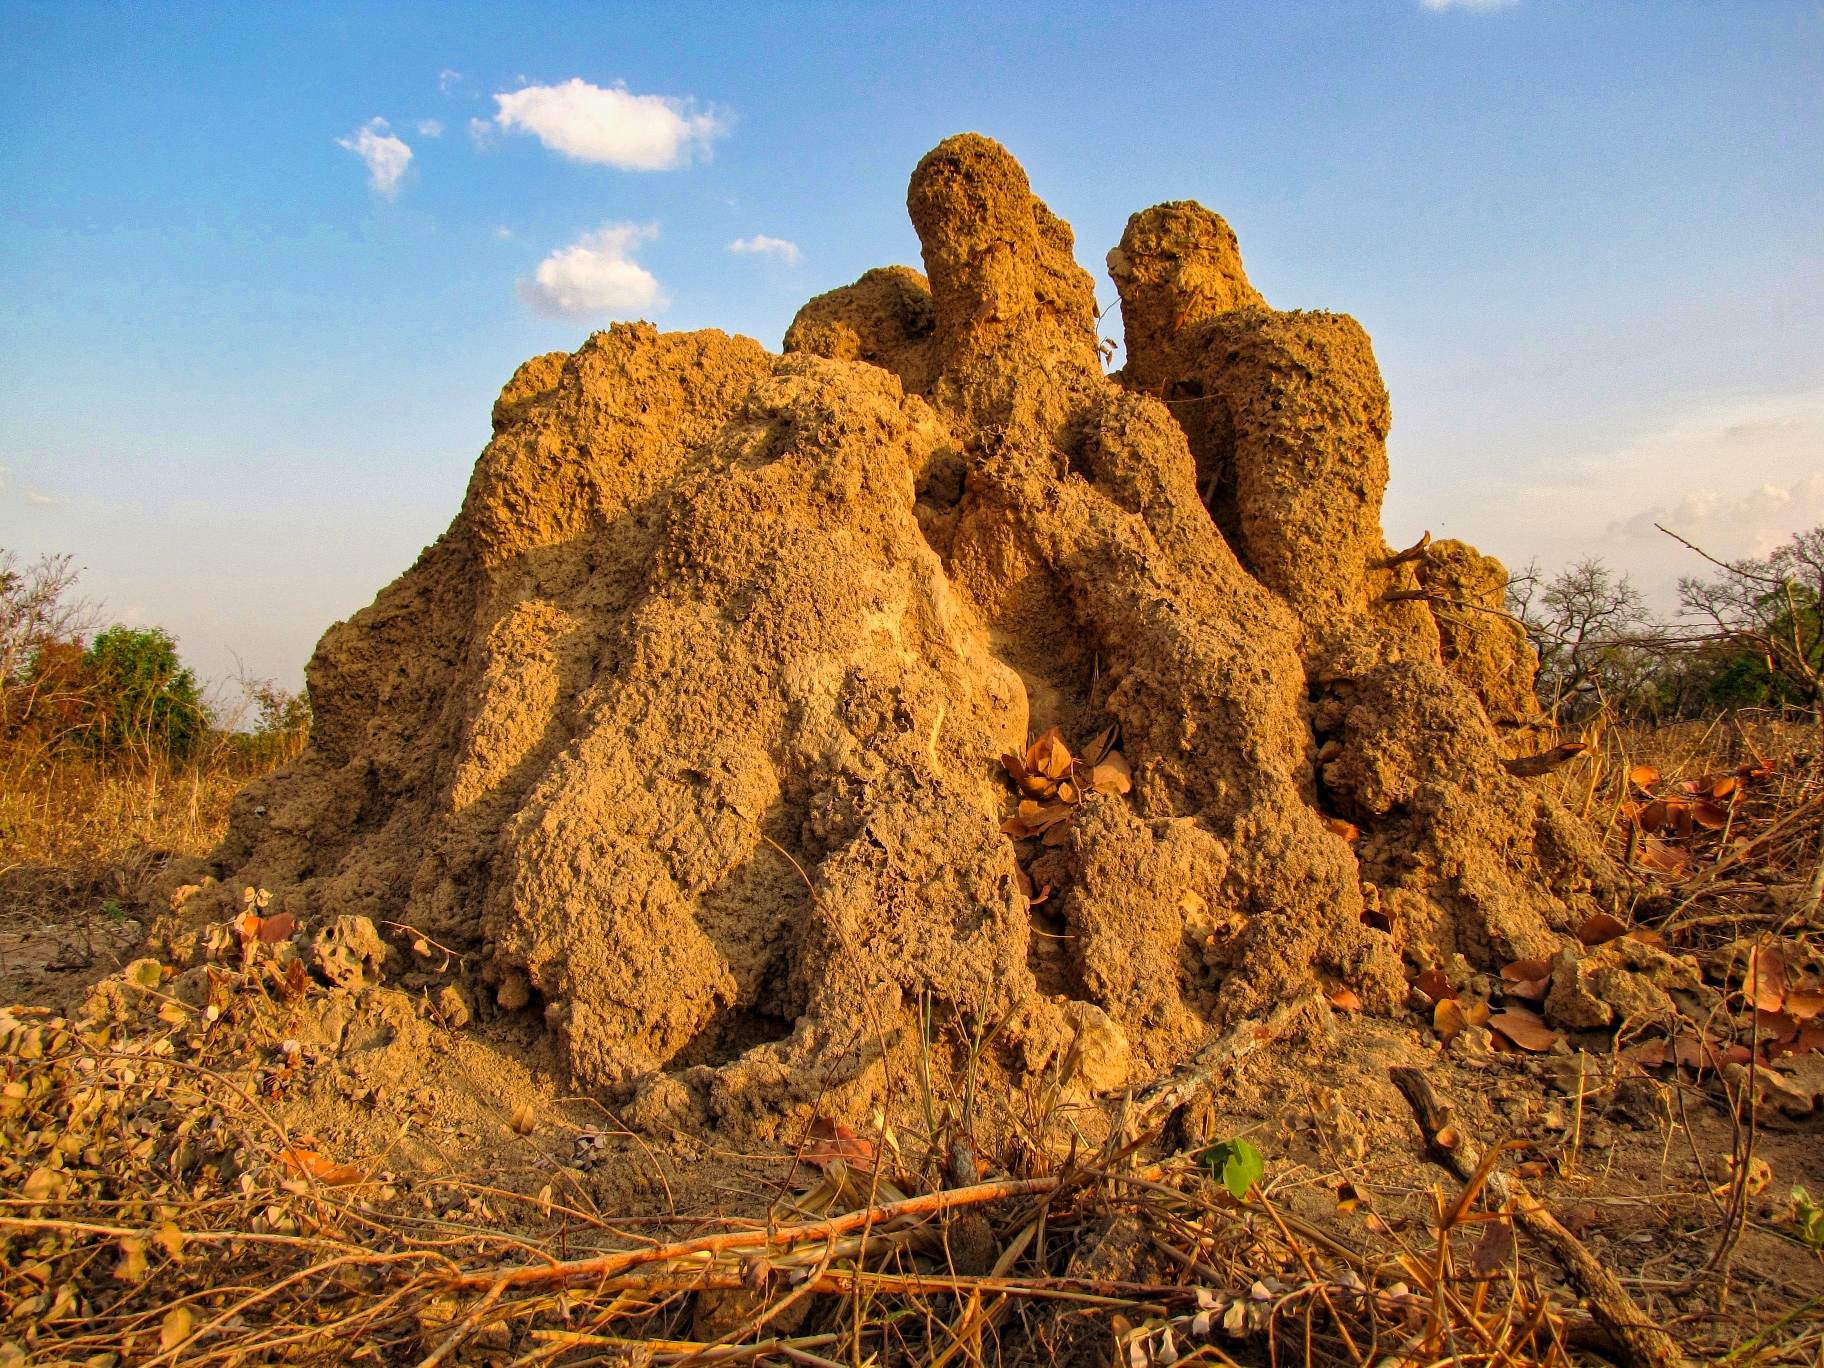 Willa Finley: Termite Mound - Toumoukro, Cote d'Ivoire 